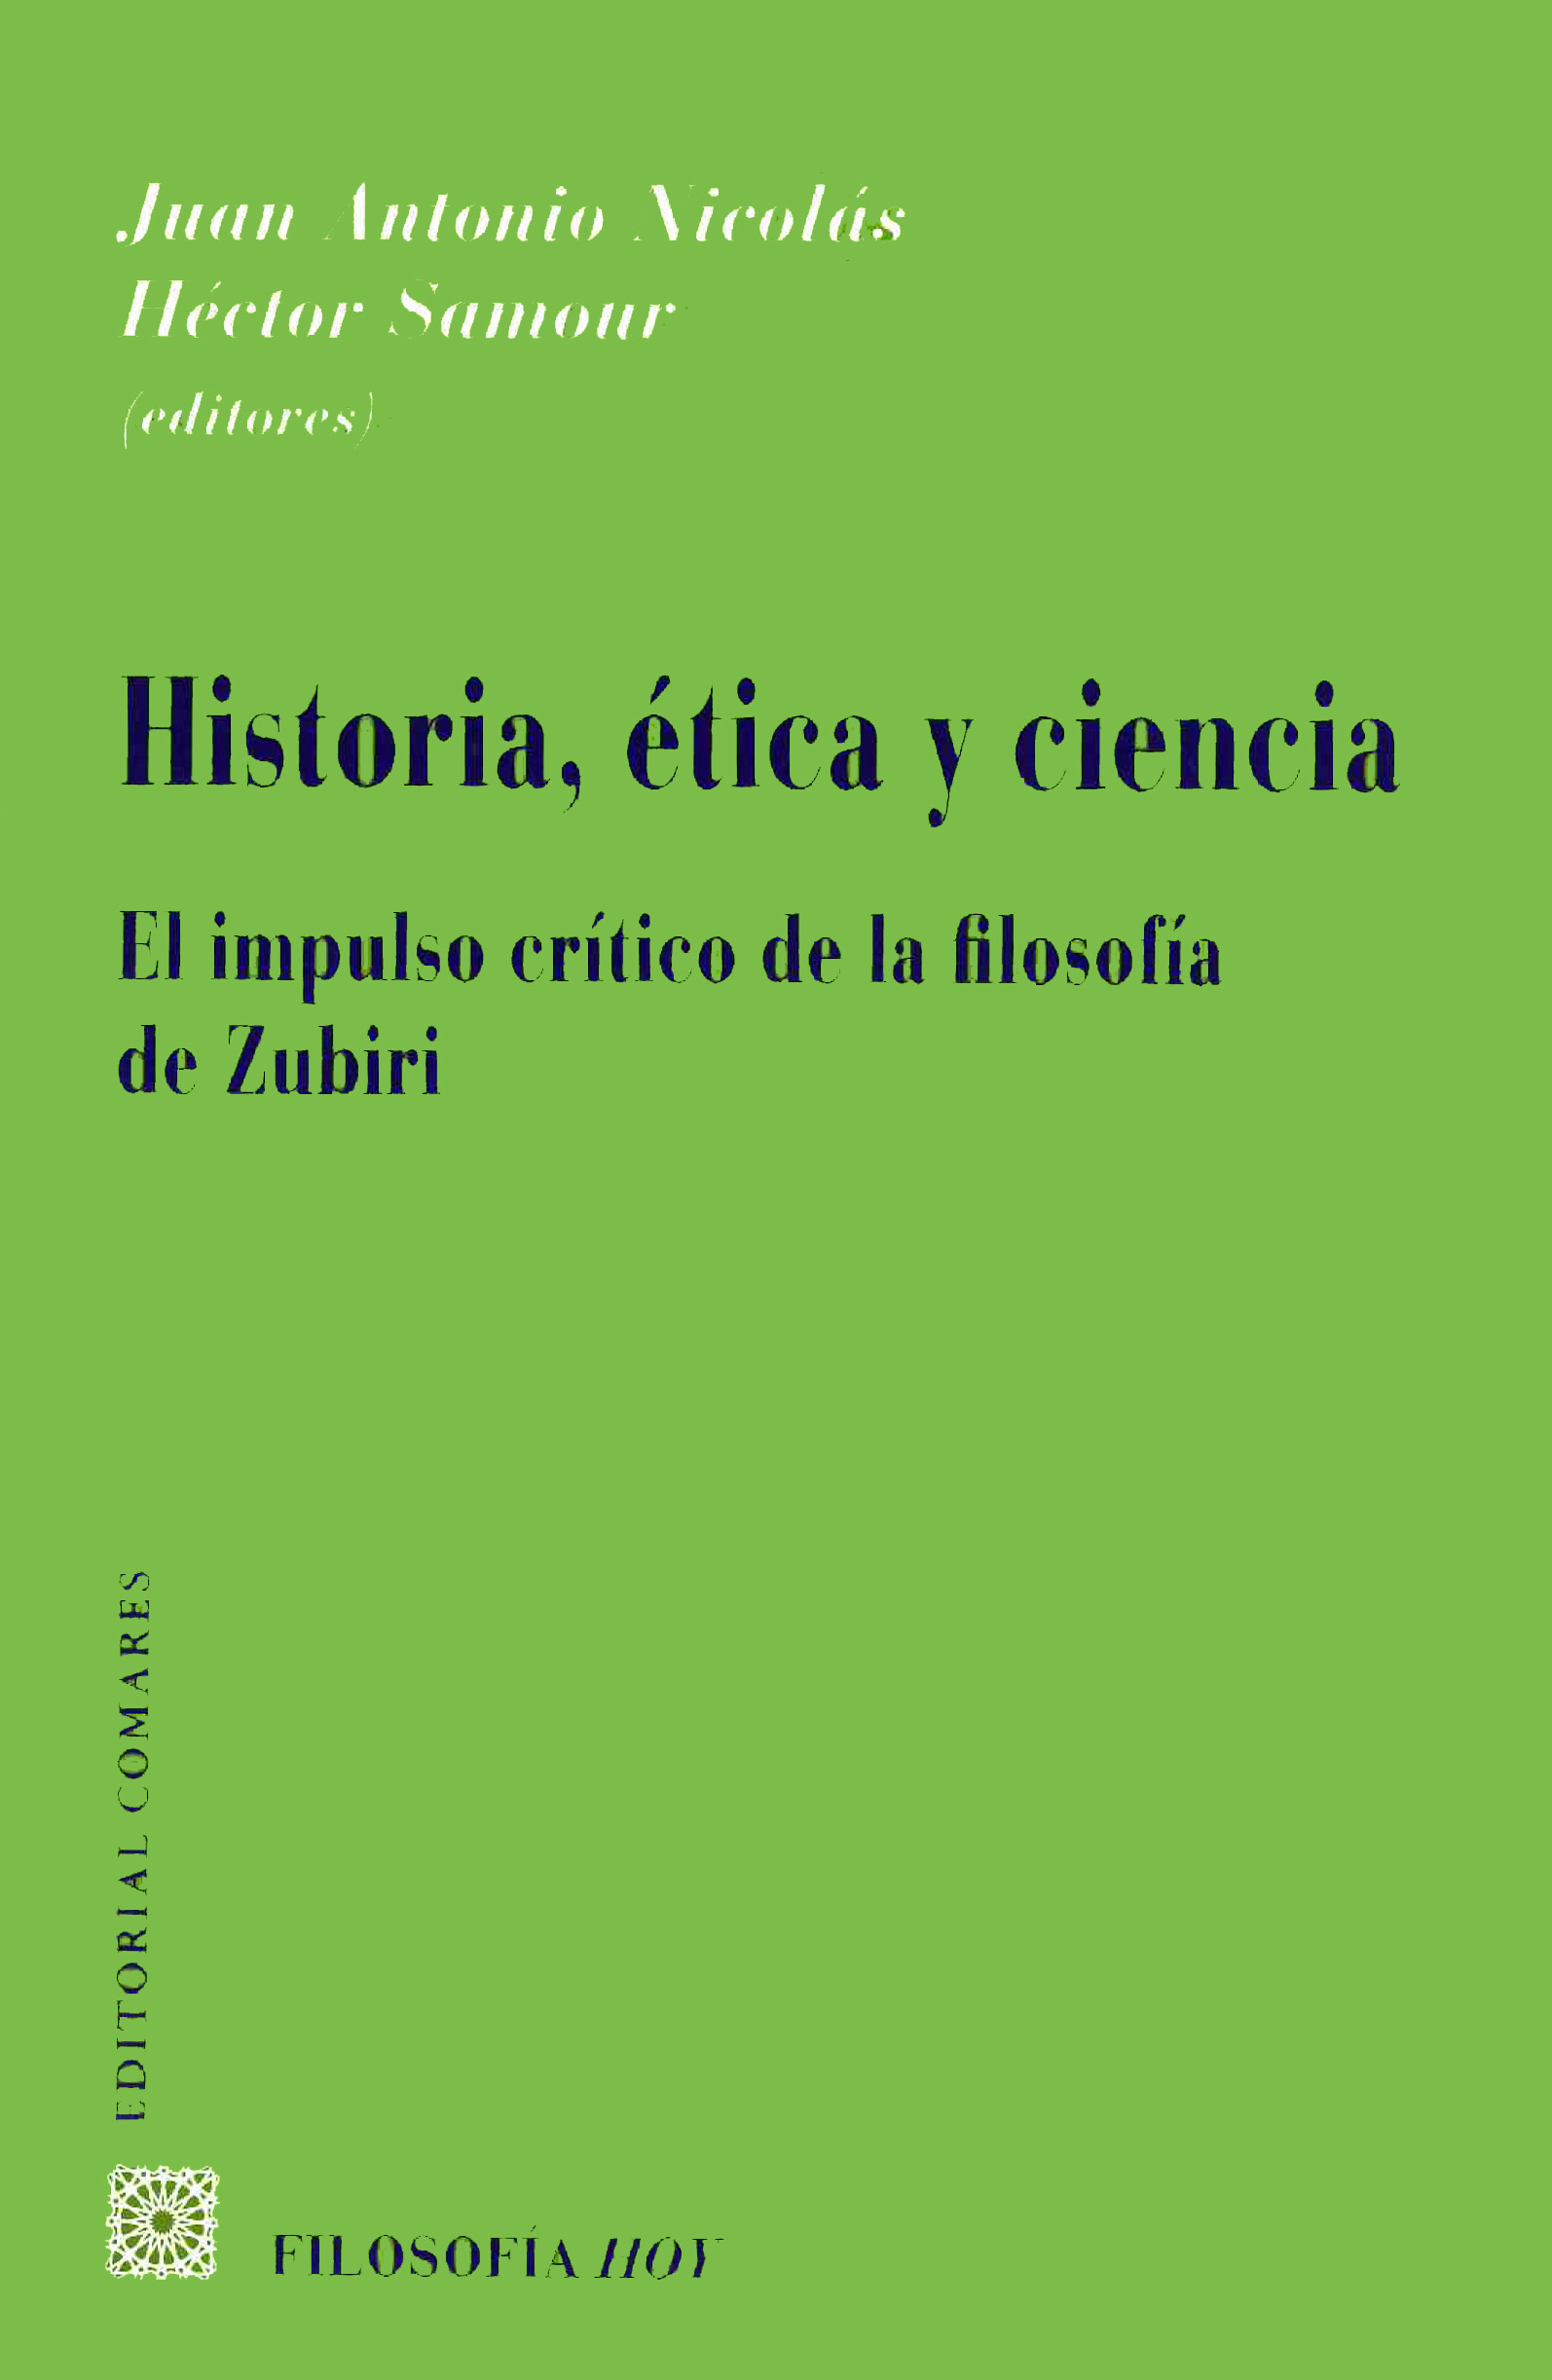 Imagen de portada del libro Historia, ética y ciencia